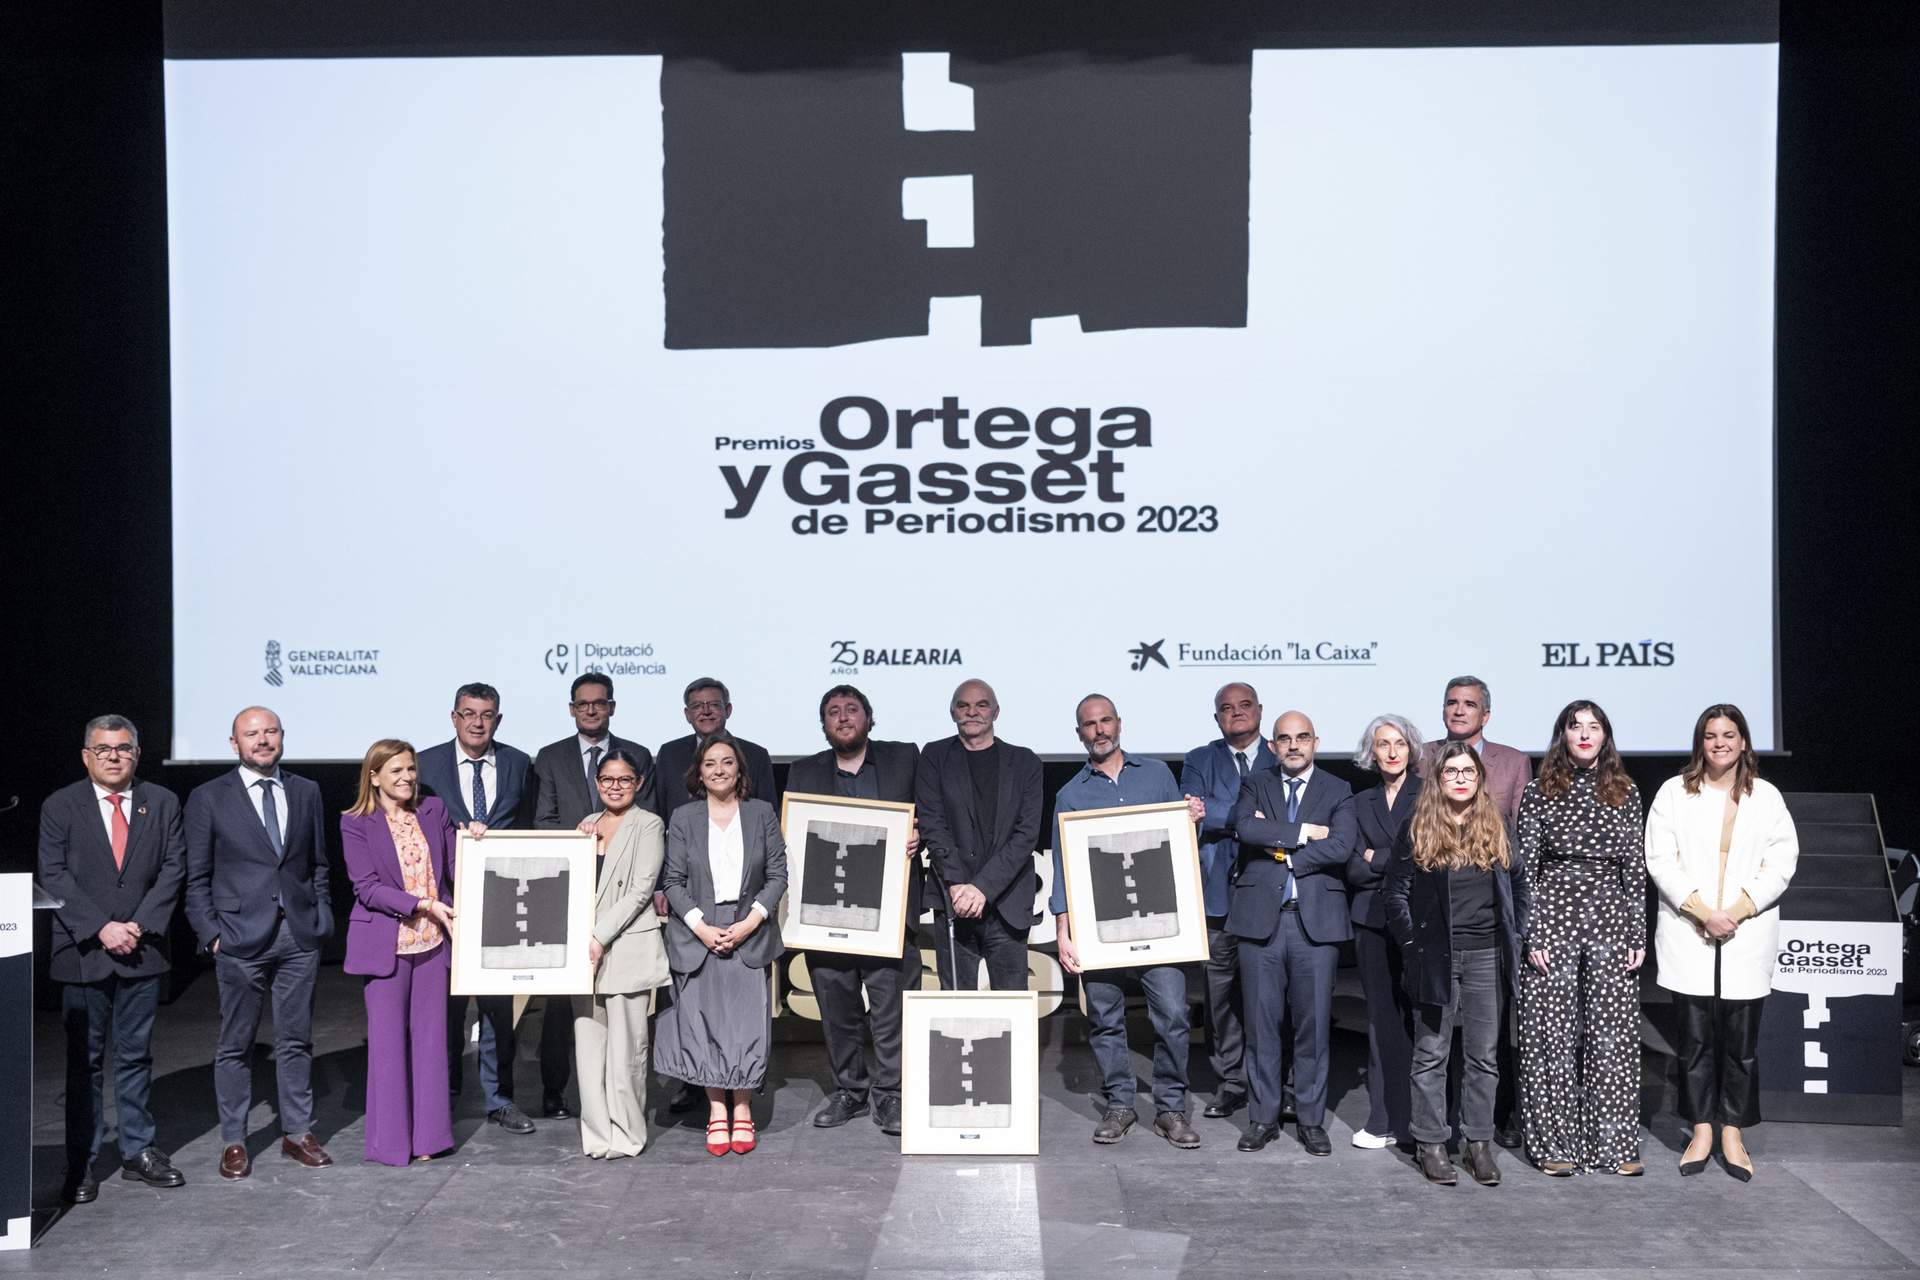 'El País' celebrará los Premios Ortega y Gasset de Periodismo el 23 de abril en Barcelona por primera vez